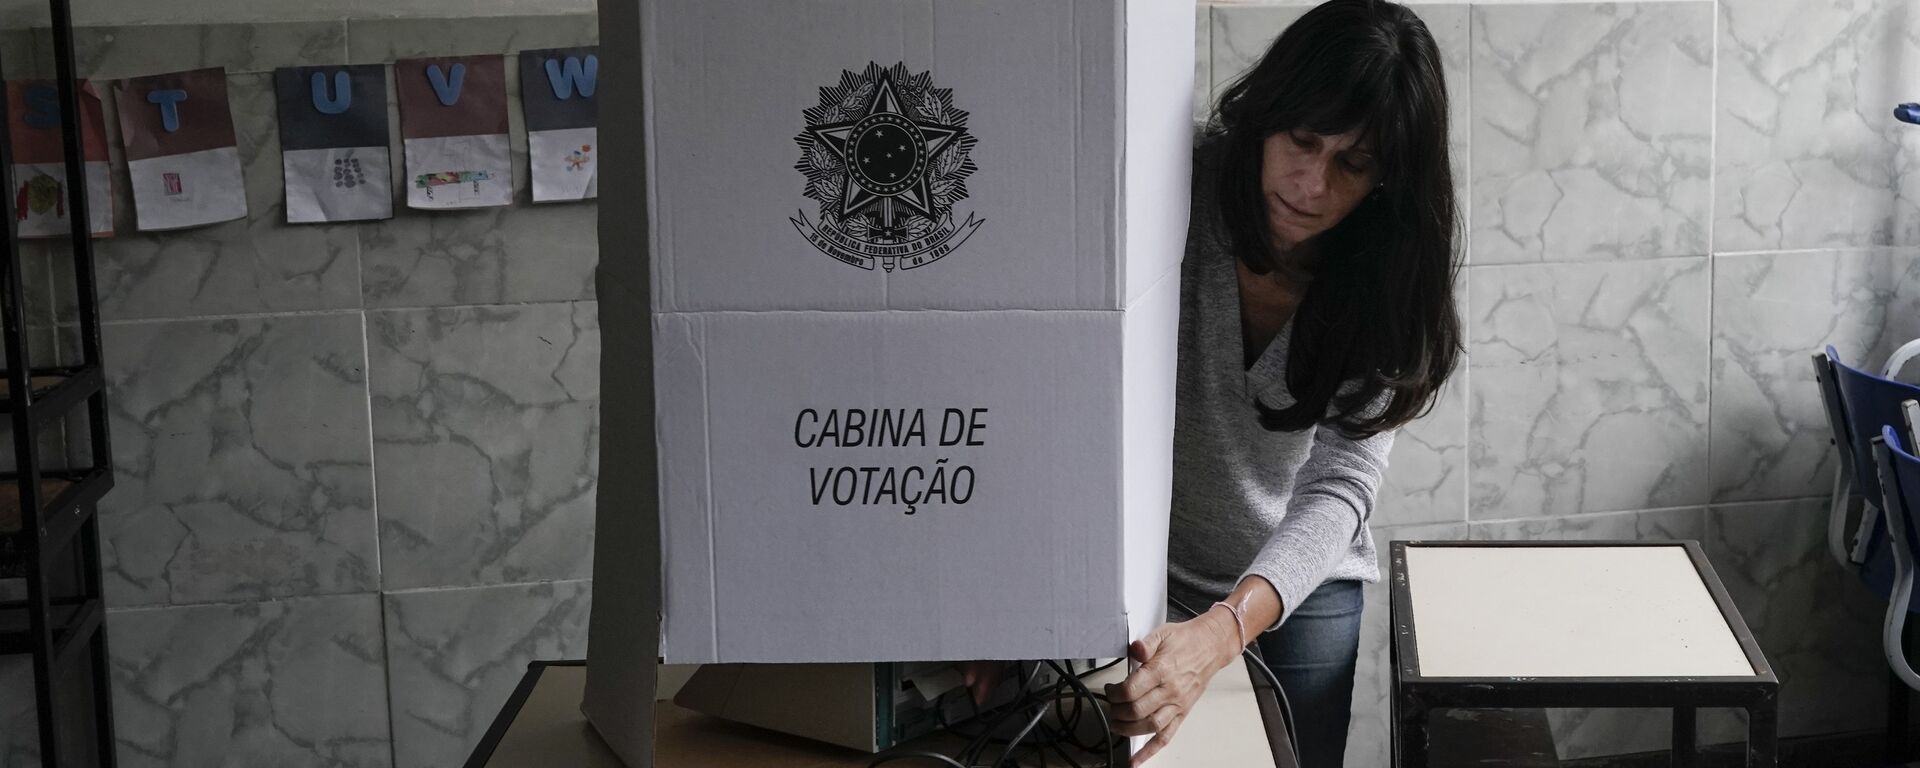 Elecciones presidenciales en Brasil - Sputnik Mundo, 1920, 03.05.2022